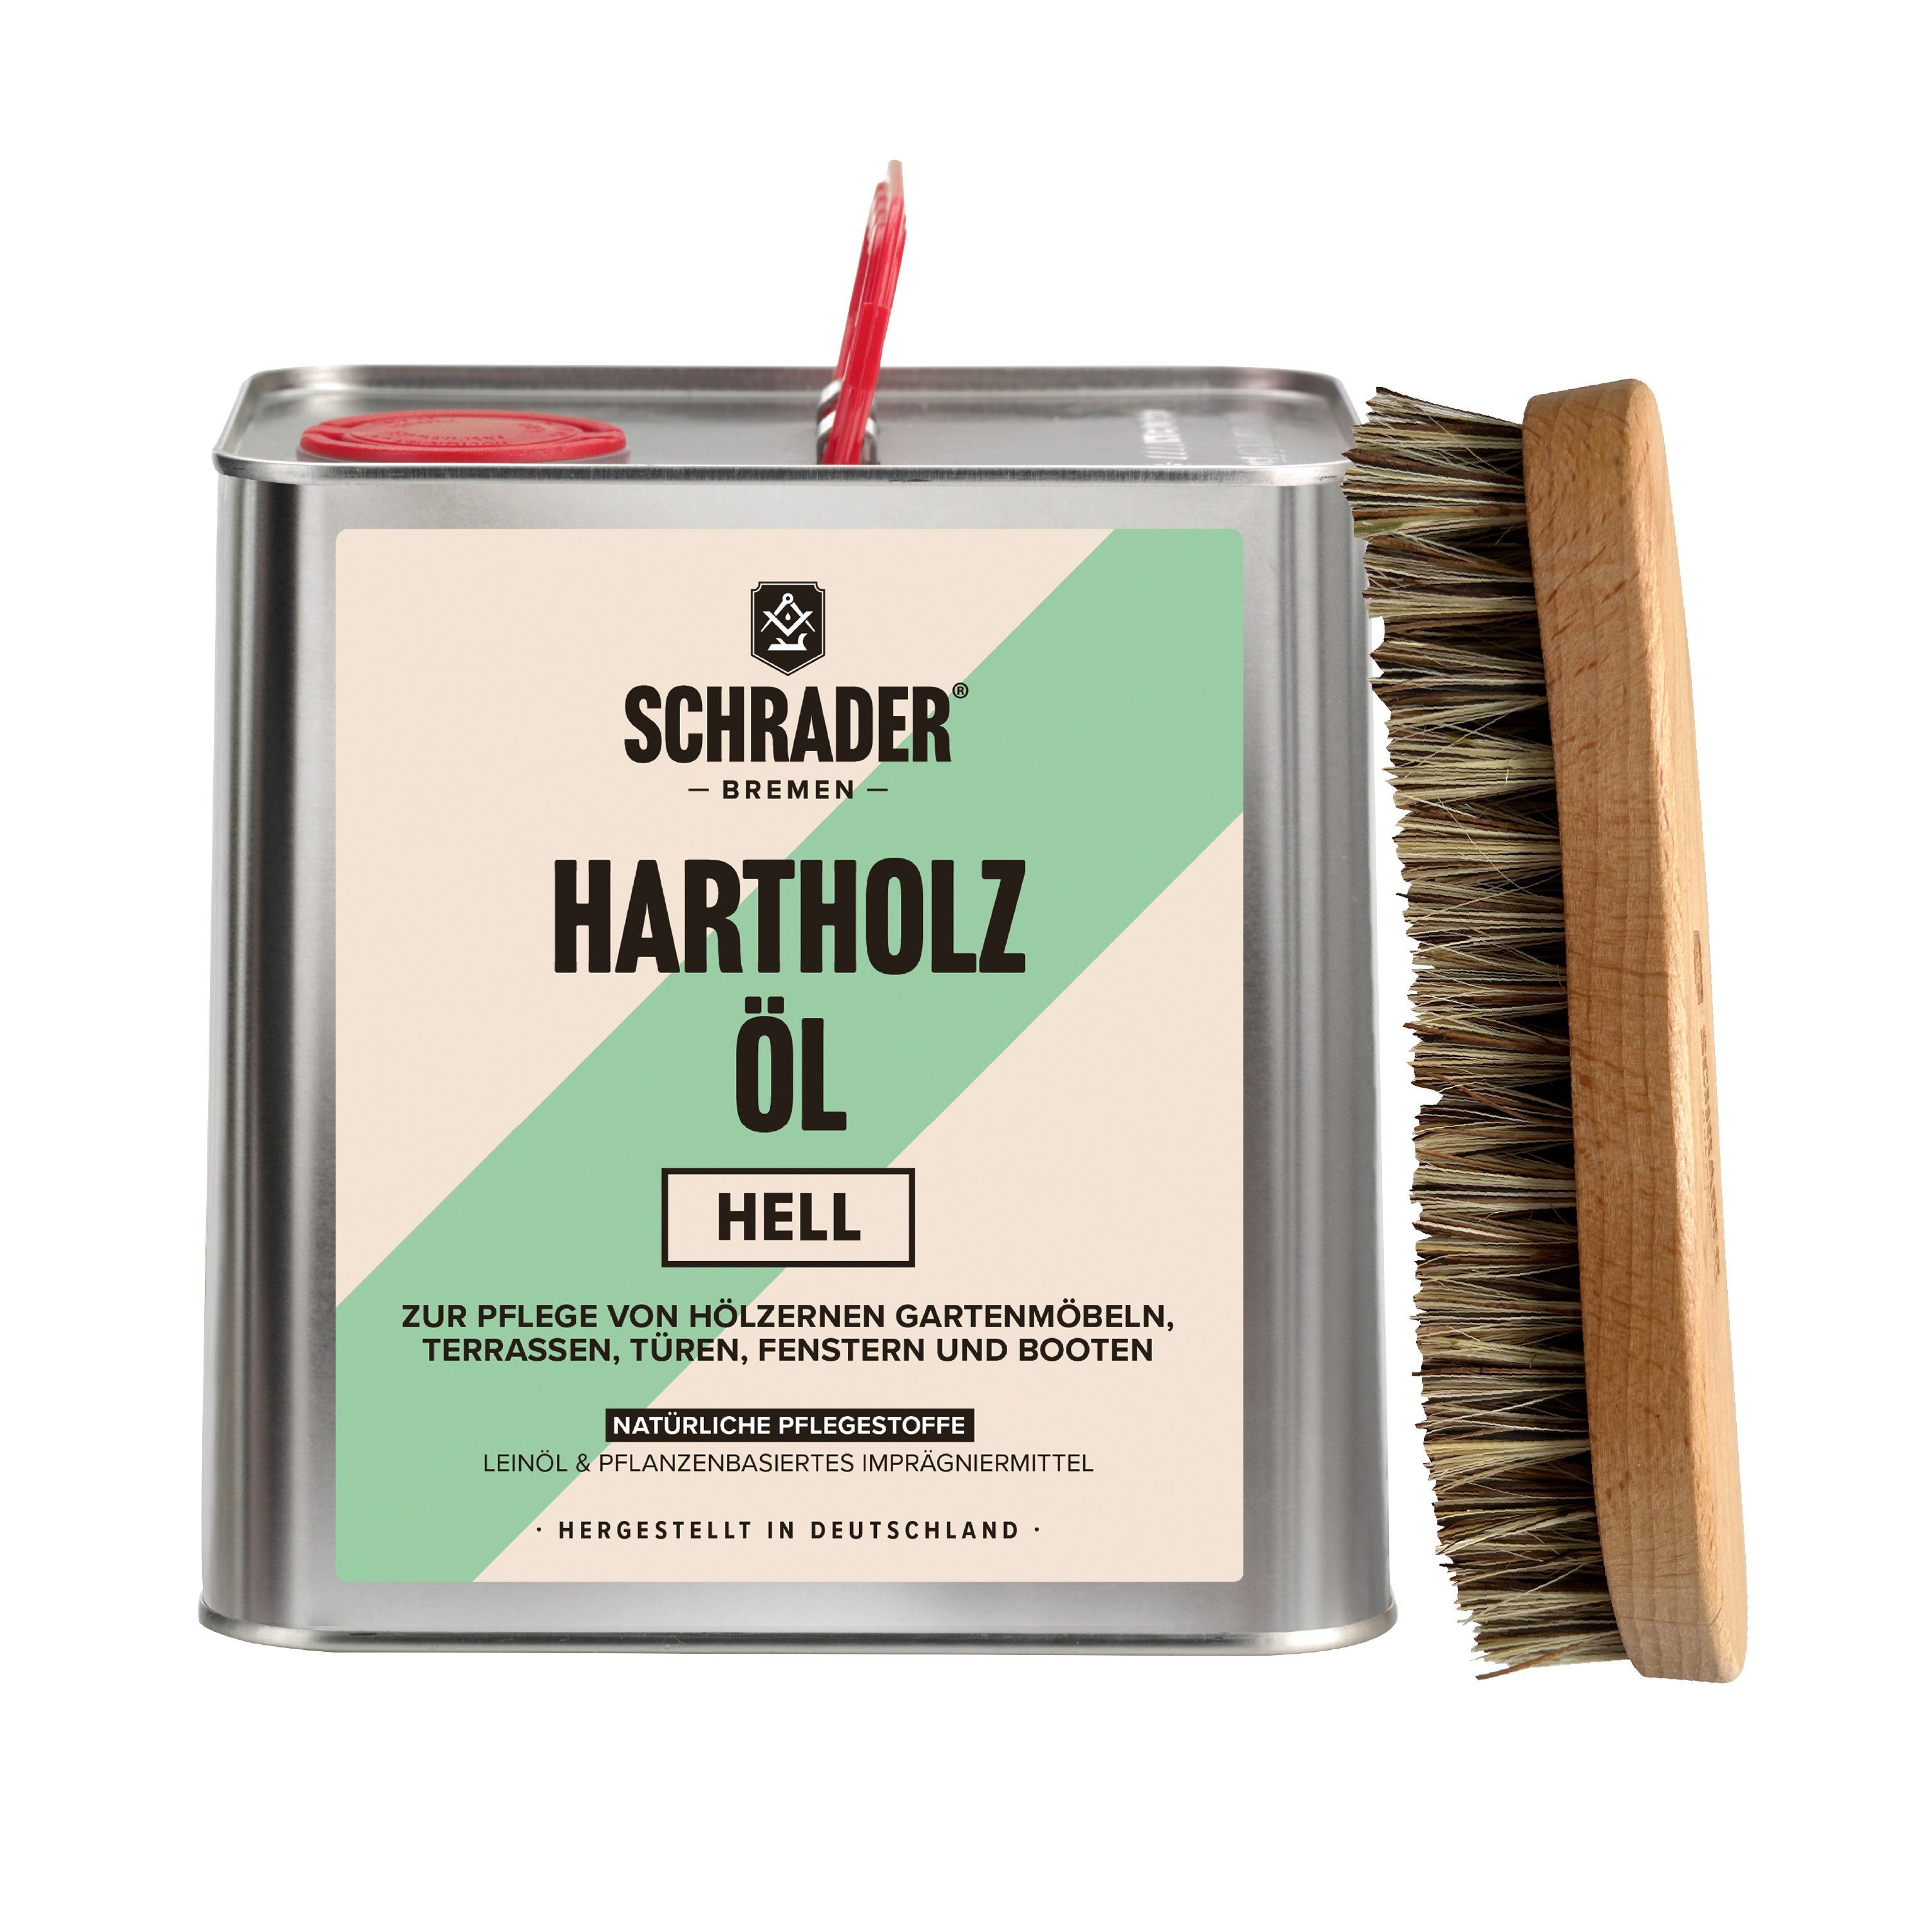 Schrader Hartholzöl Terrassenöl hell - Pflegeset mit Teaköl - 2,5L -, Enthält Hartholzöl und Schmutzbürste - 2-teilig - Made in Germany